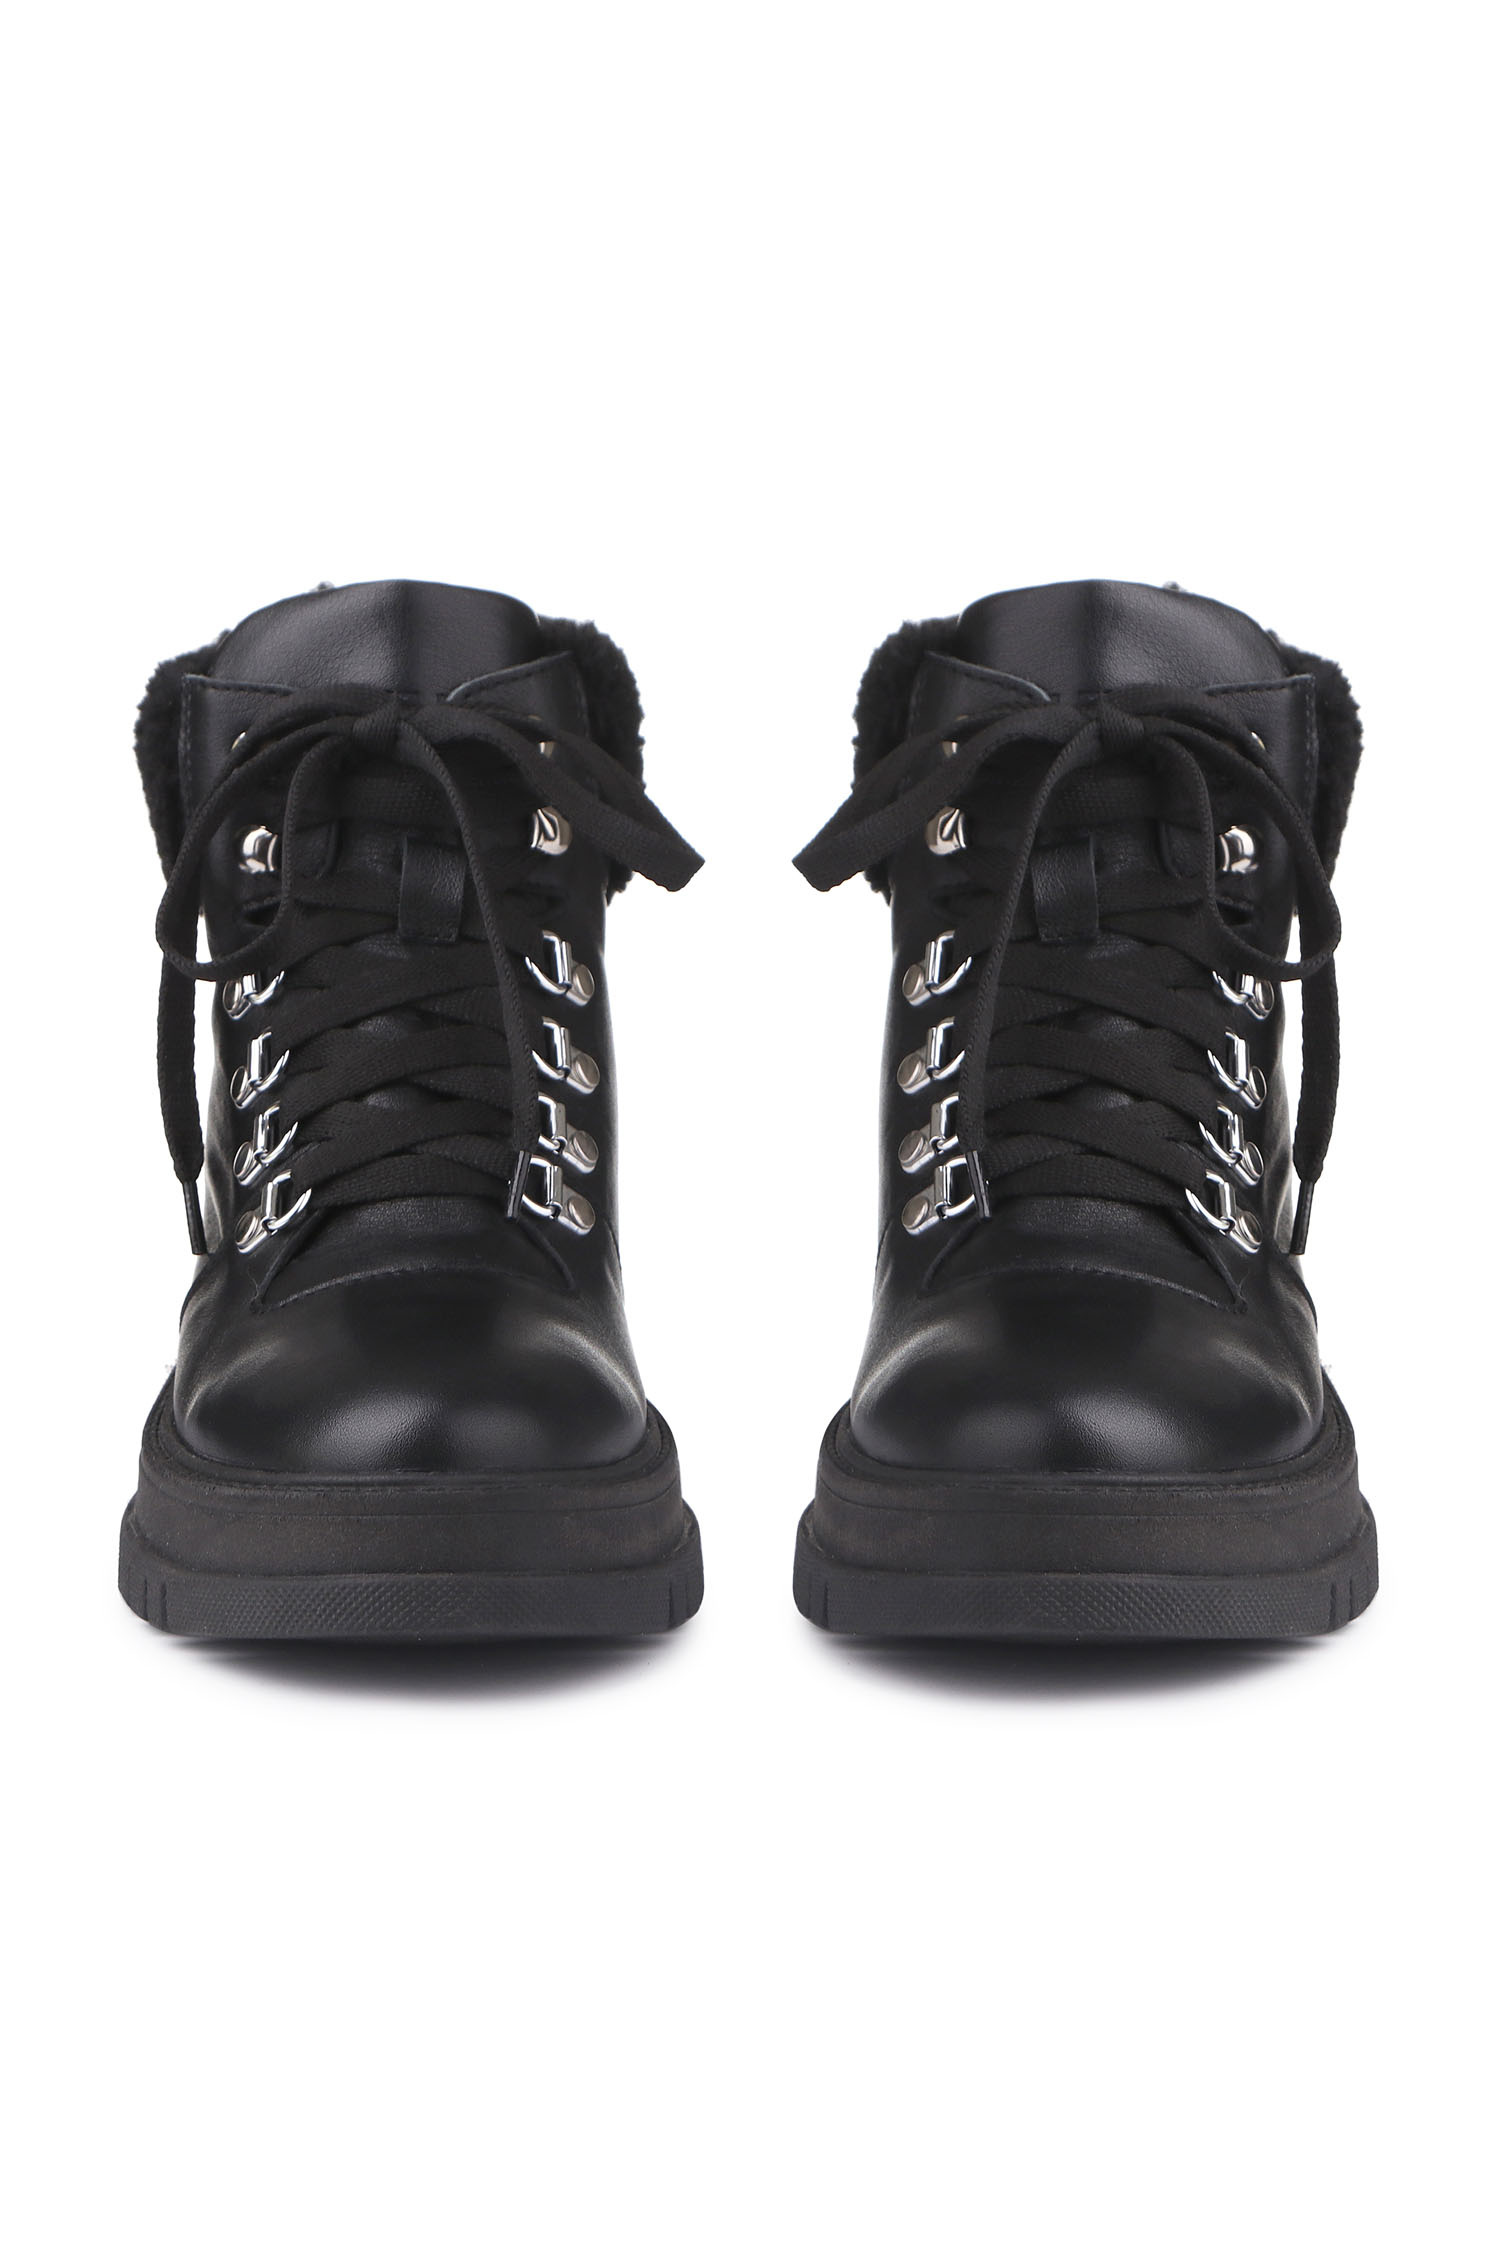 Зимові черевики Hiking boots чорні з чорним хутром - THE LACE фото 123285